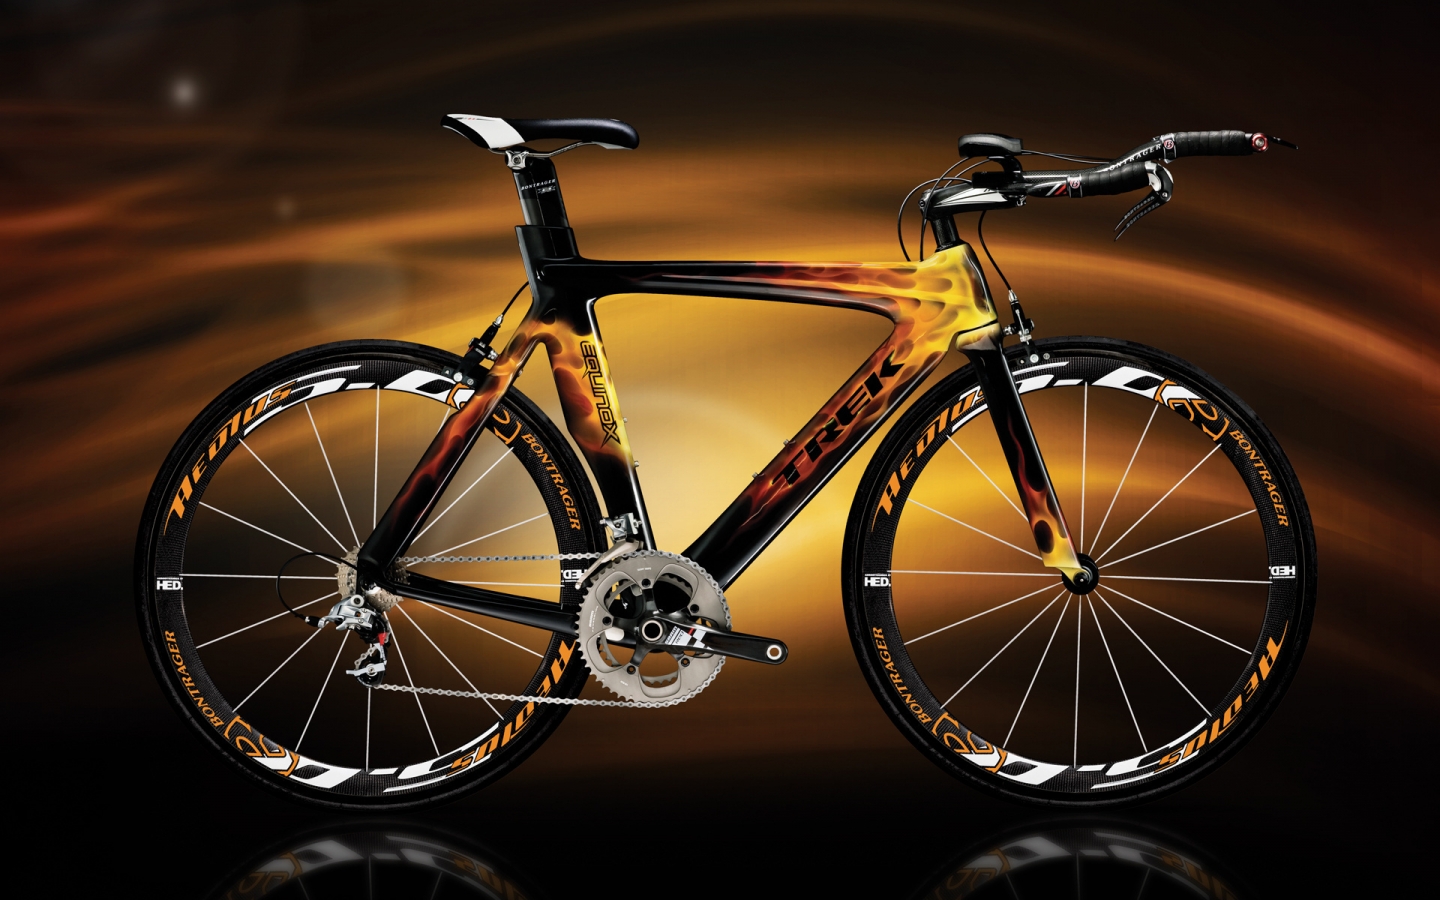 Trek Bike for 1440 x 900 widescreen resolution